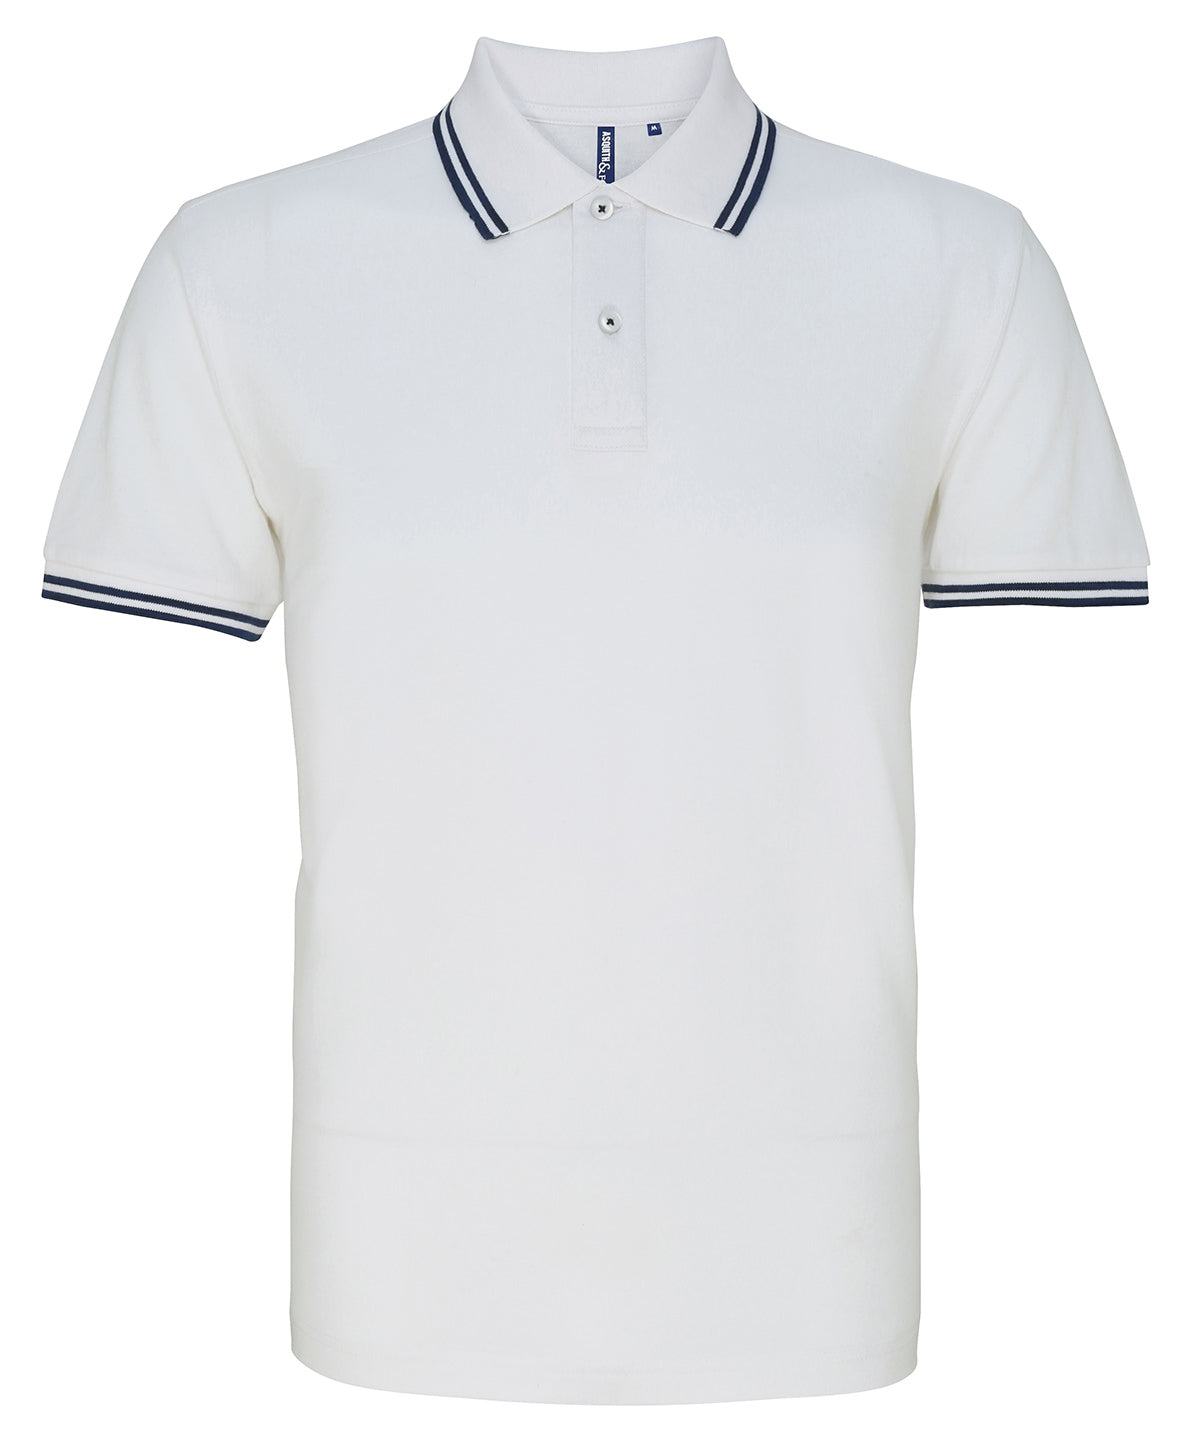 Mens Tipped Short Sleeve Polo Shirt - White/Navy – Harrington Jacket Store